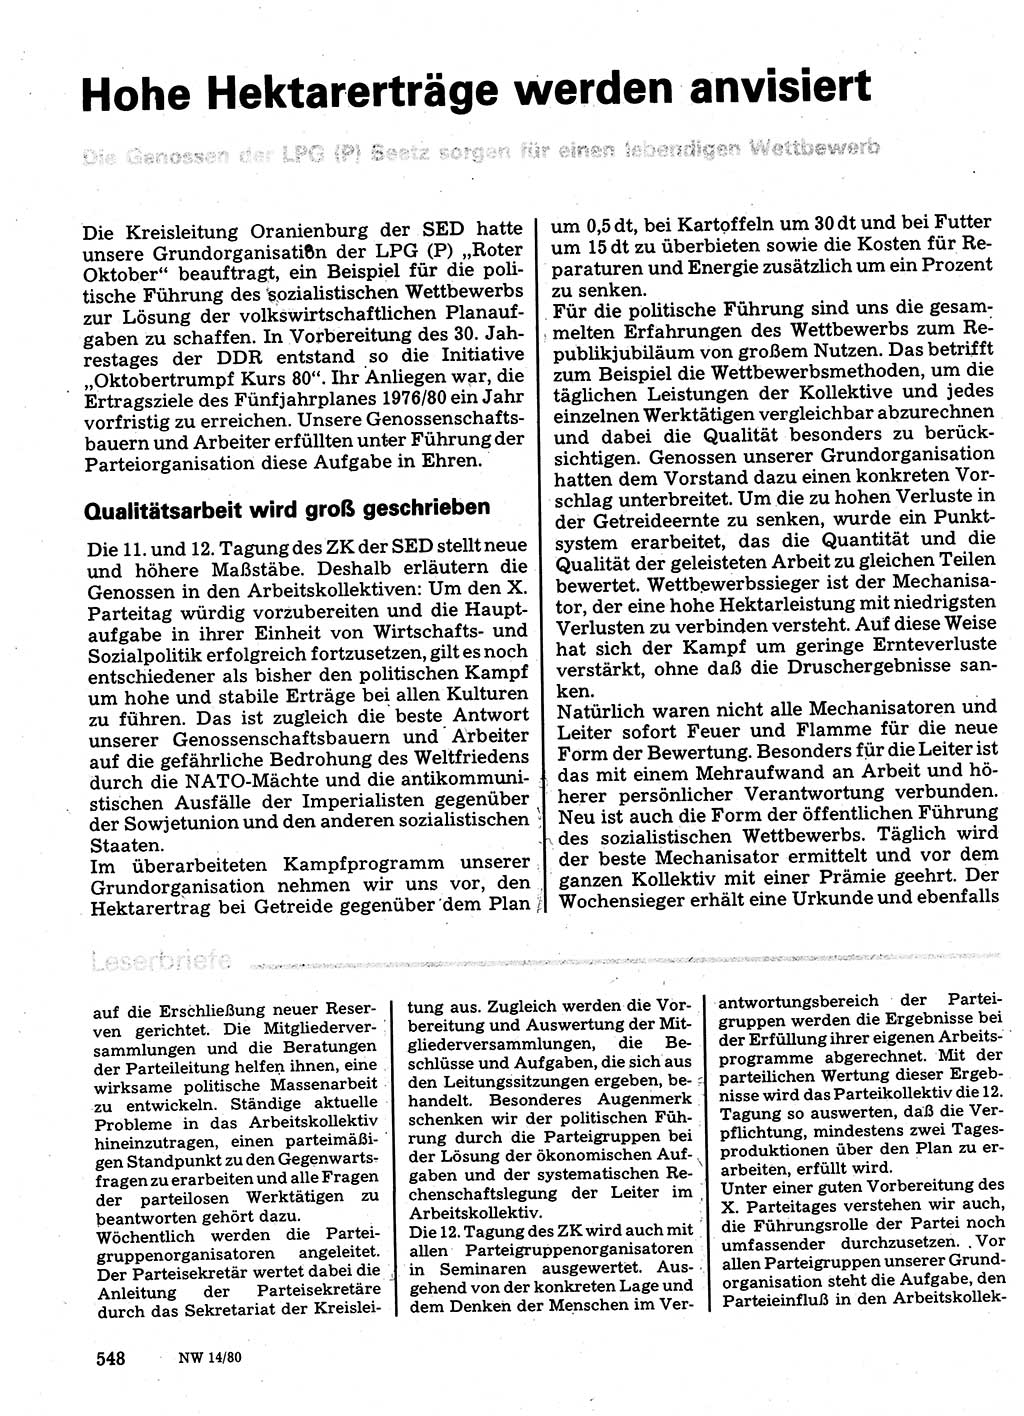 Neuer Weg (NW), Organ des Zentralkomitees (ZK) der SED (Sozialistische Einheitspartei Deutschlands) für Fragen des Parteilebens, 35. Jahrgang [Deutsche Demokratische Republik (DDR)] 1980, Seite 548 (NW ZK SED DDR 1980, S. 548)